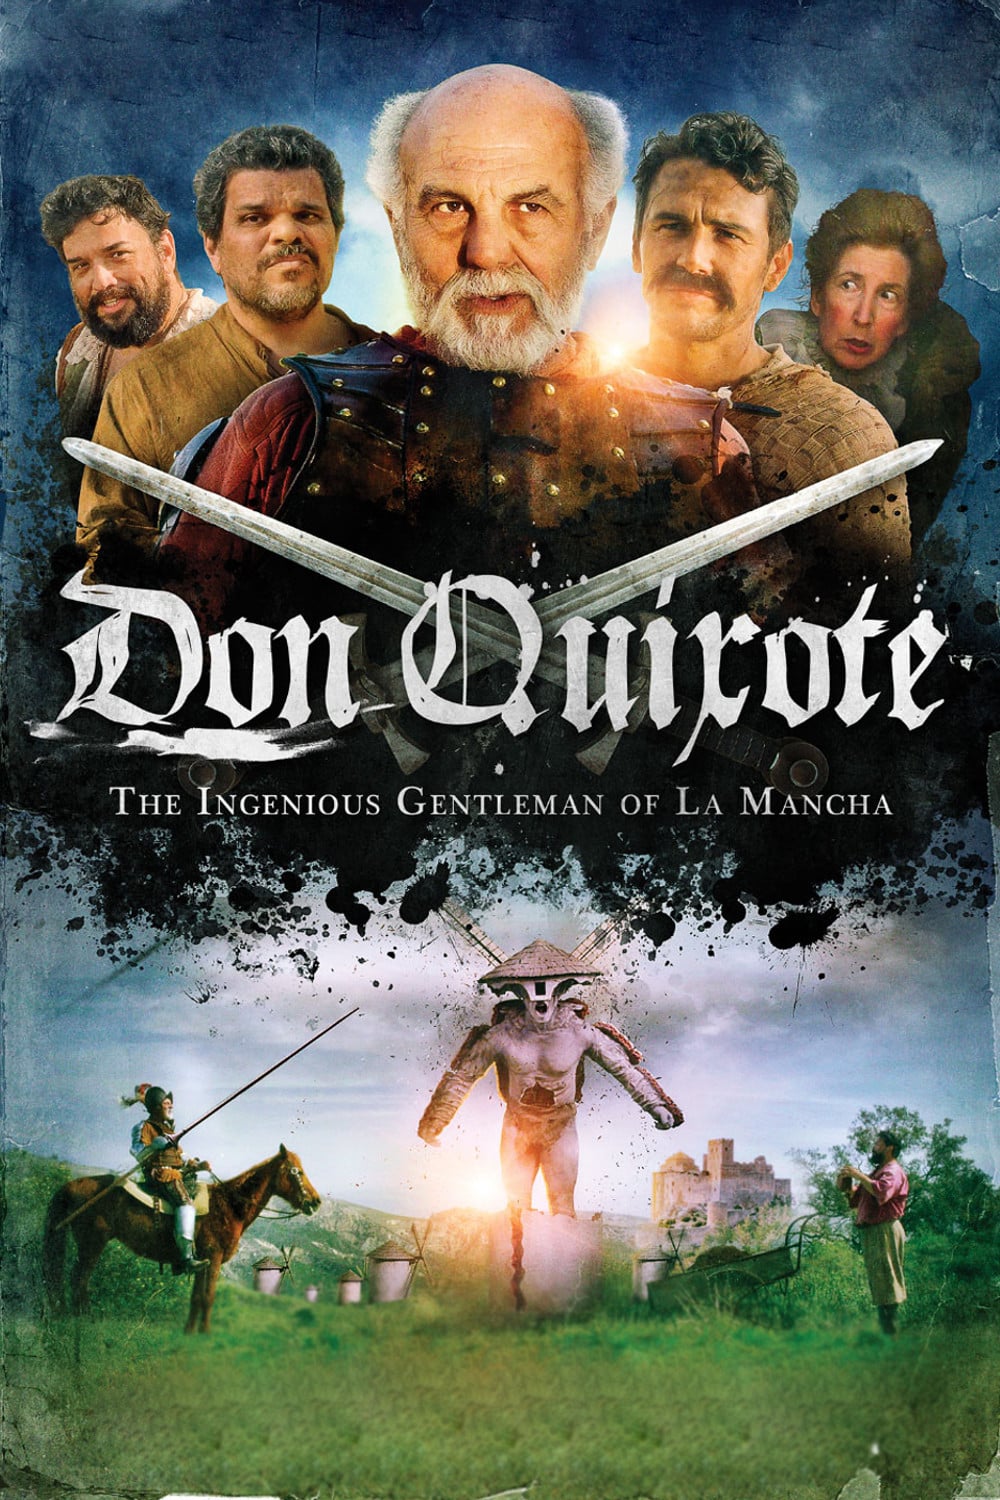 Plakat von "Don Quijote von der Mancha"